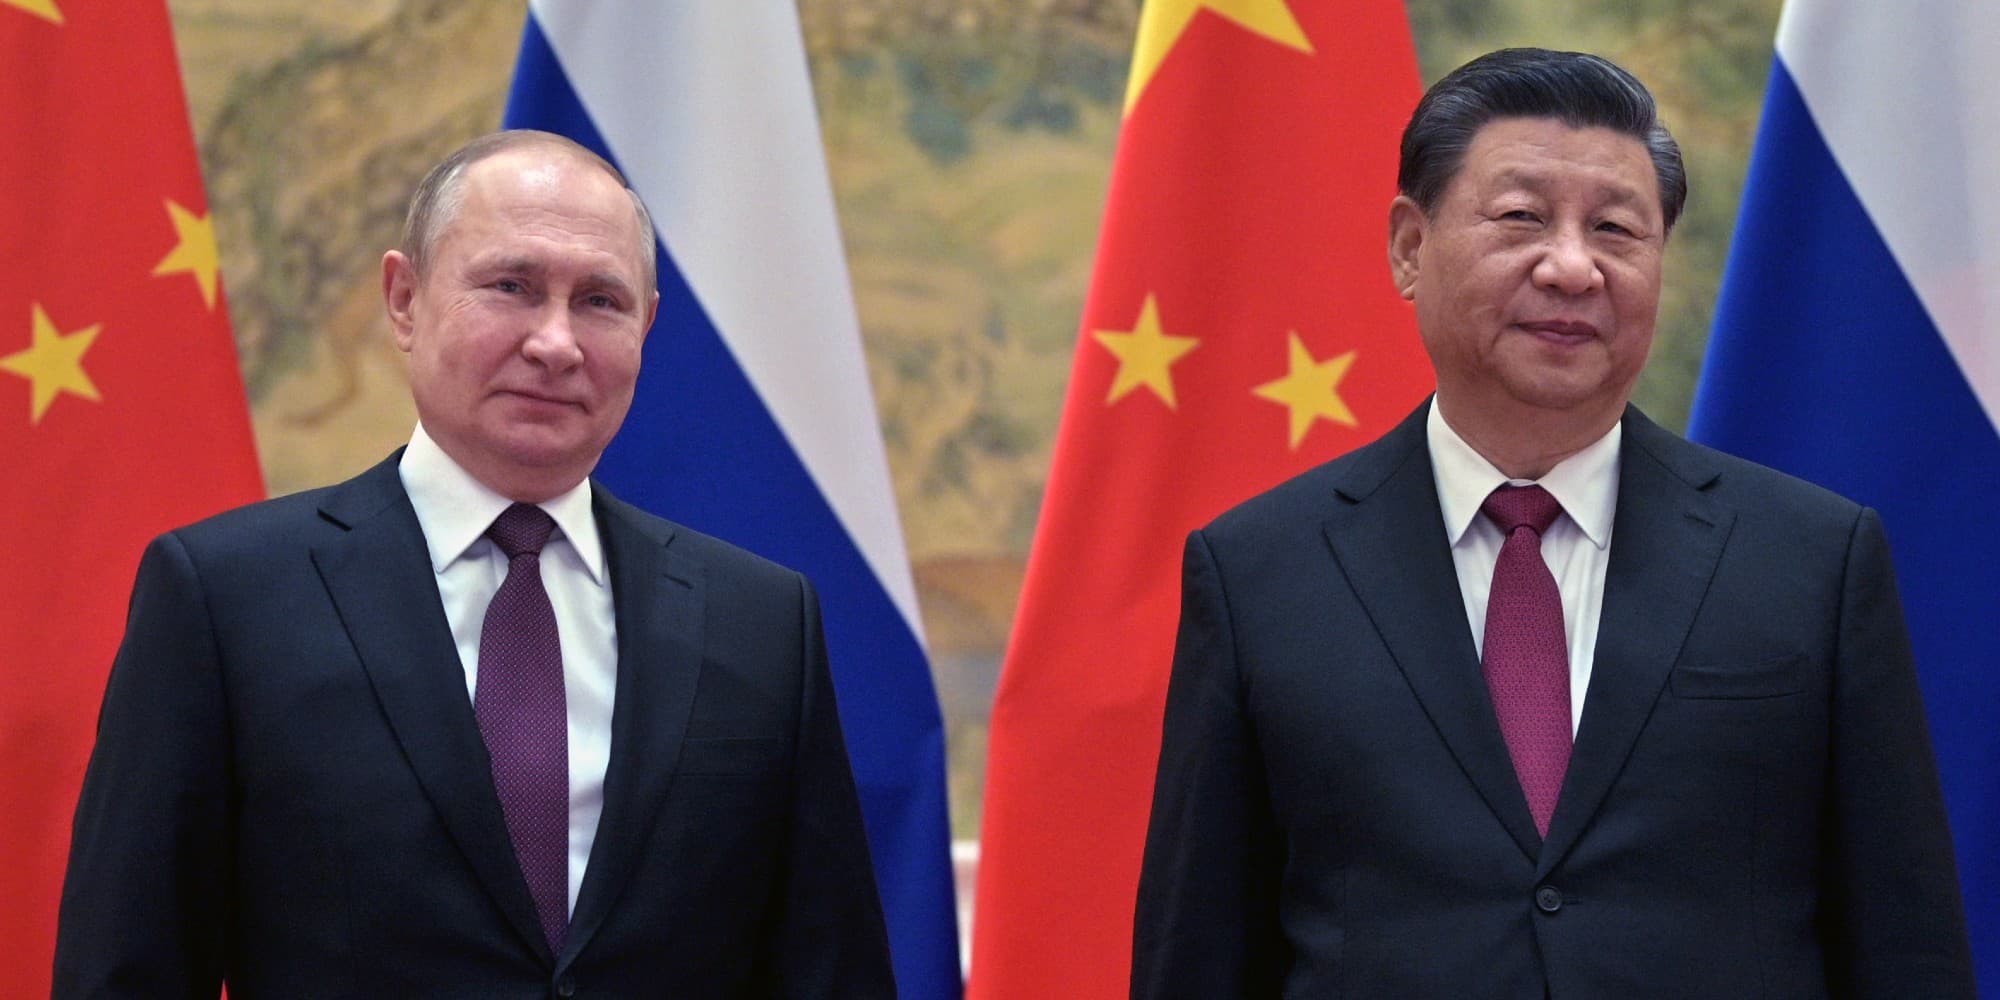 Ο Ρώσος πρόεδρος Βλαντίμιρ Πούτιν και ο Κινέζος ομόλογός του Σι Τζινπίνγκ